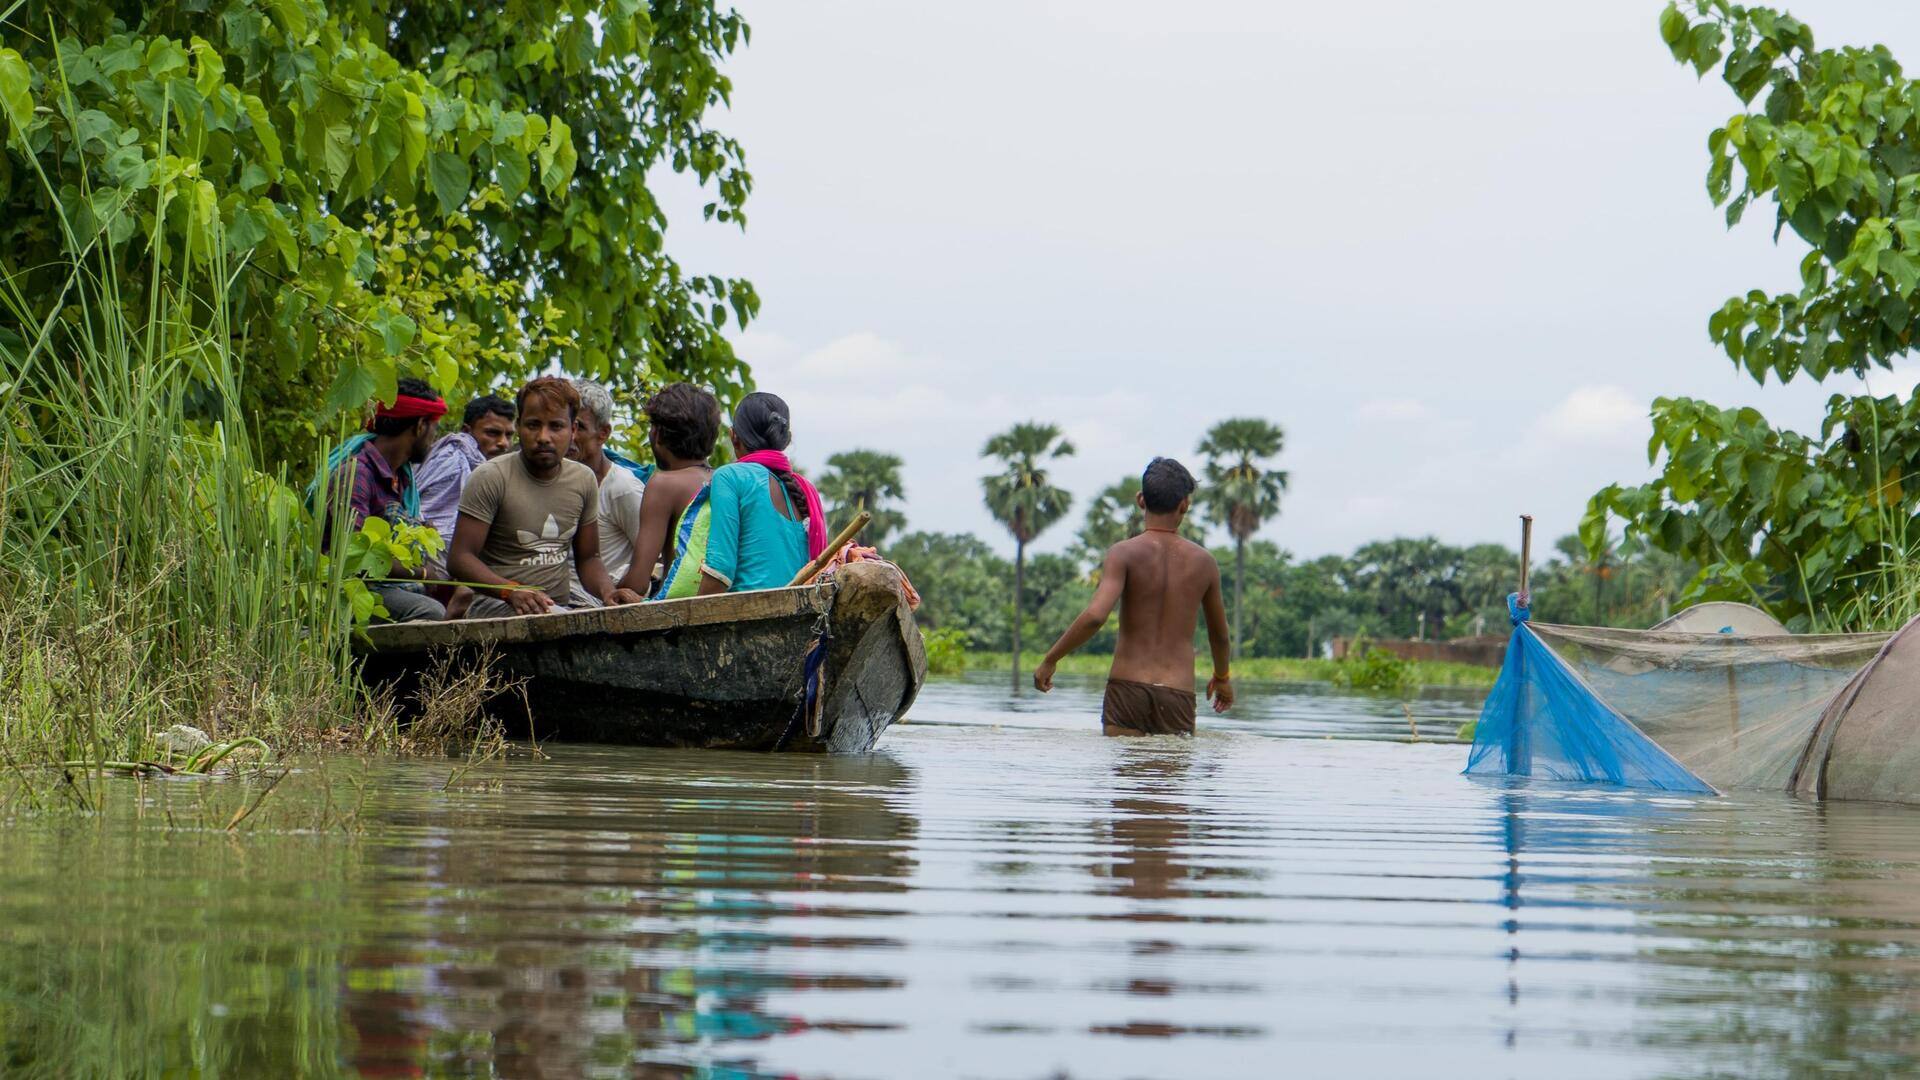 असम: बाढ़ से 10 जिलों के 31,000 लोग हुए प्रभावित, अभी 5 दिन और होगी बारिश